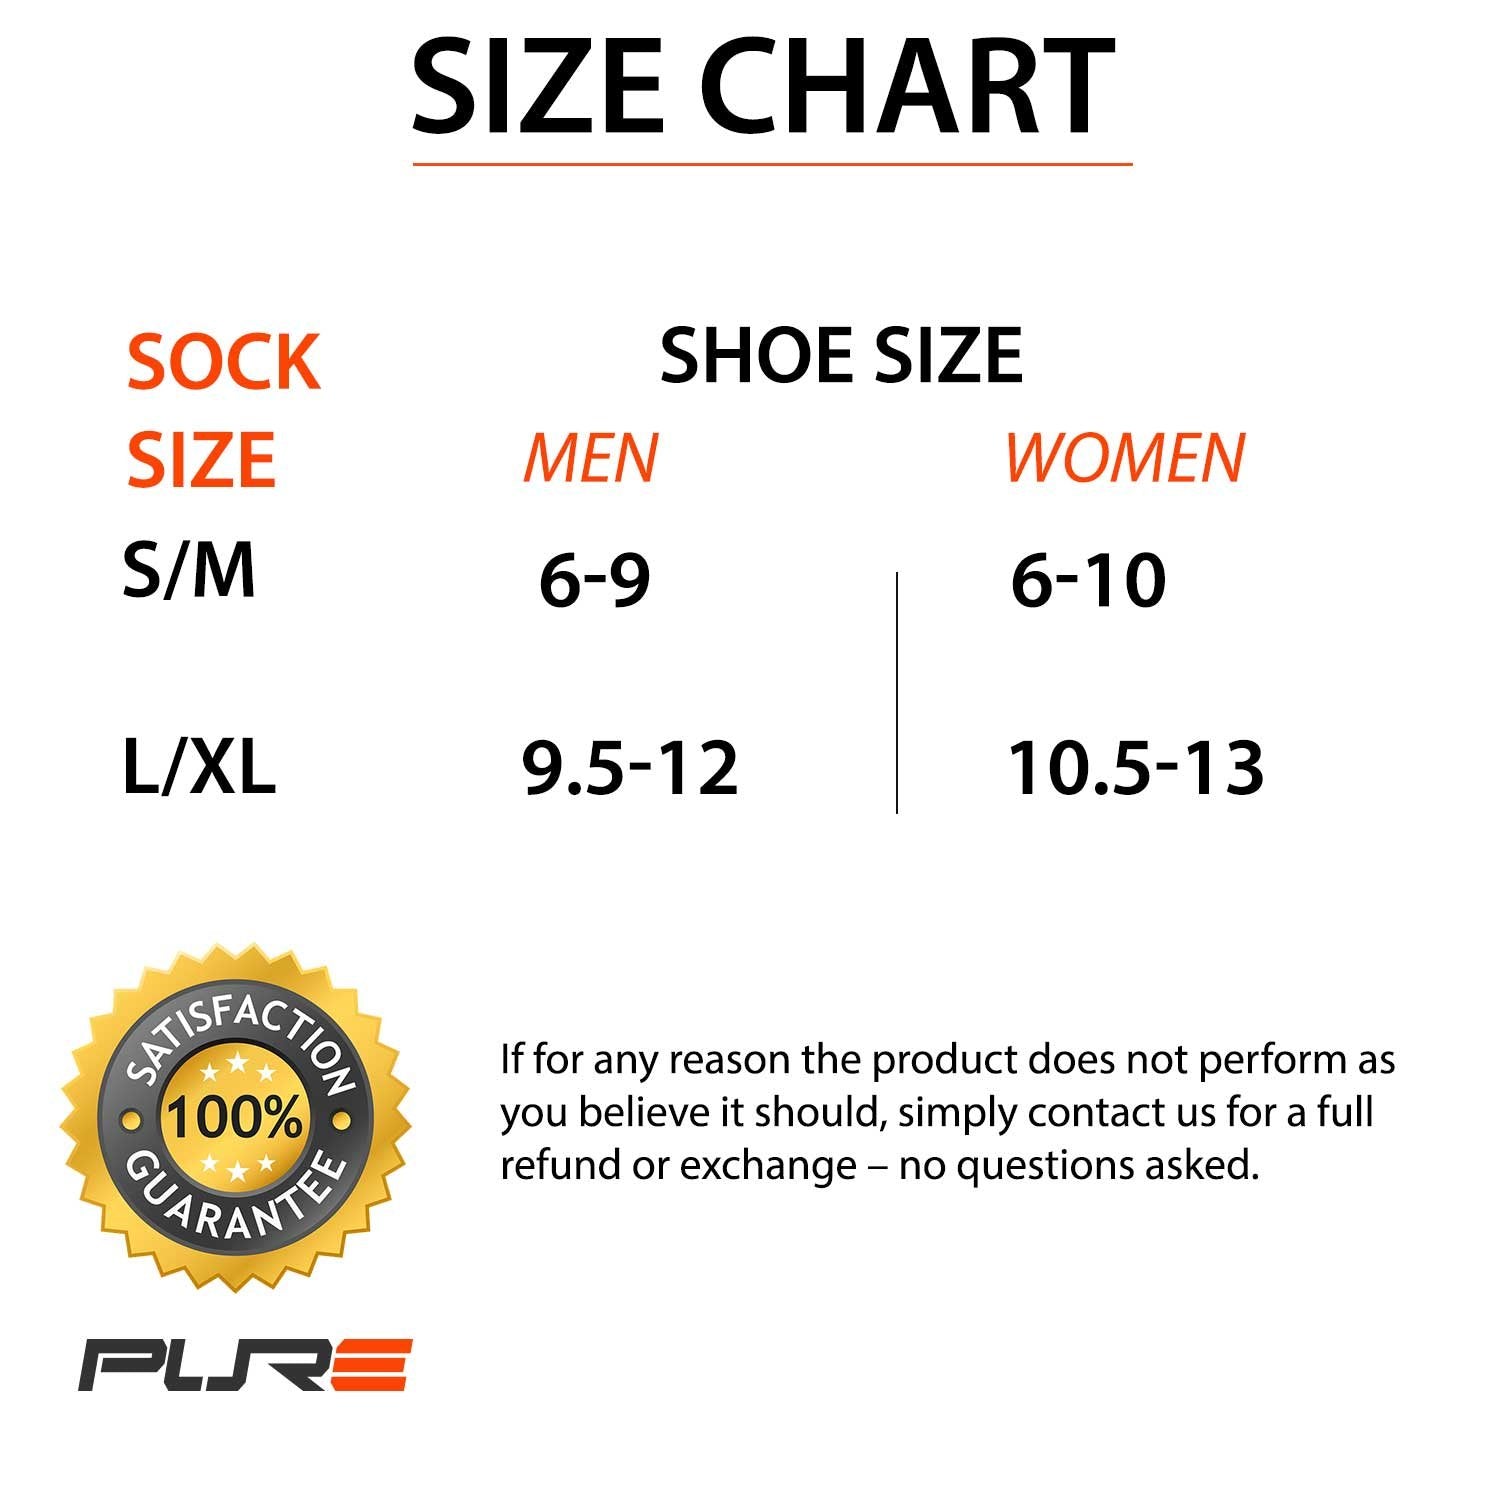 No-Show Anti-Blister Running Socks - Moisture Wicking Sport Socks for Men, Women